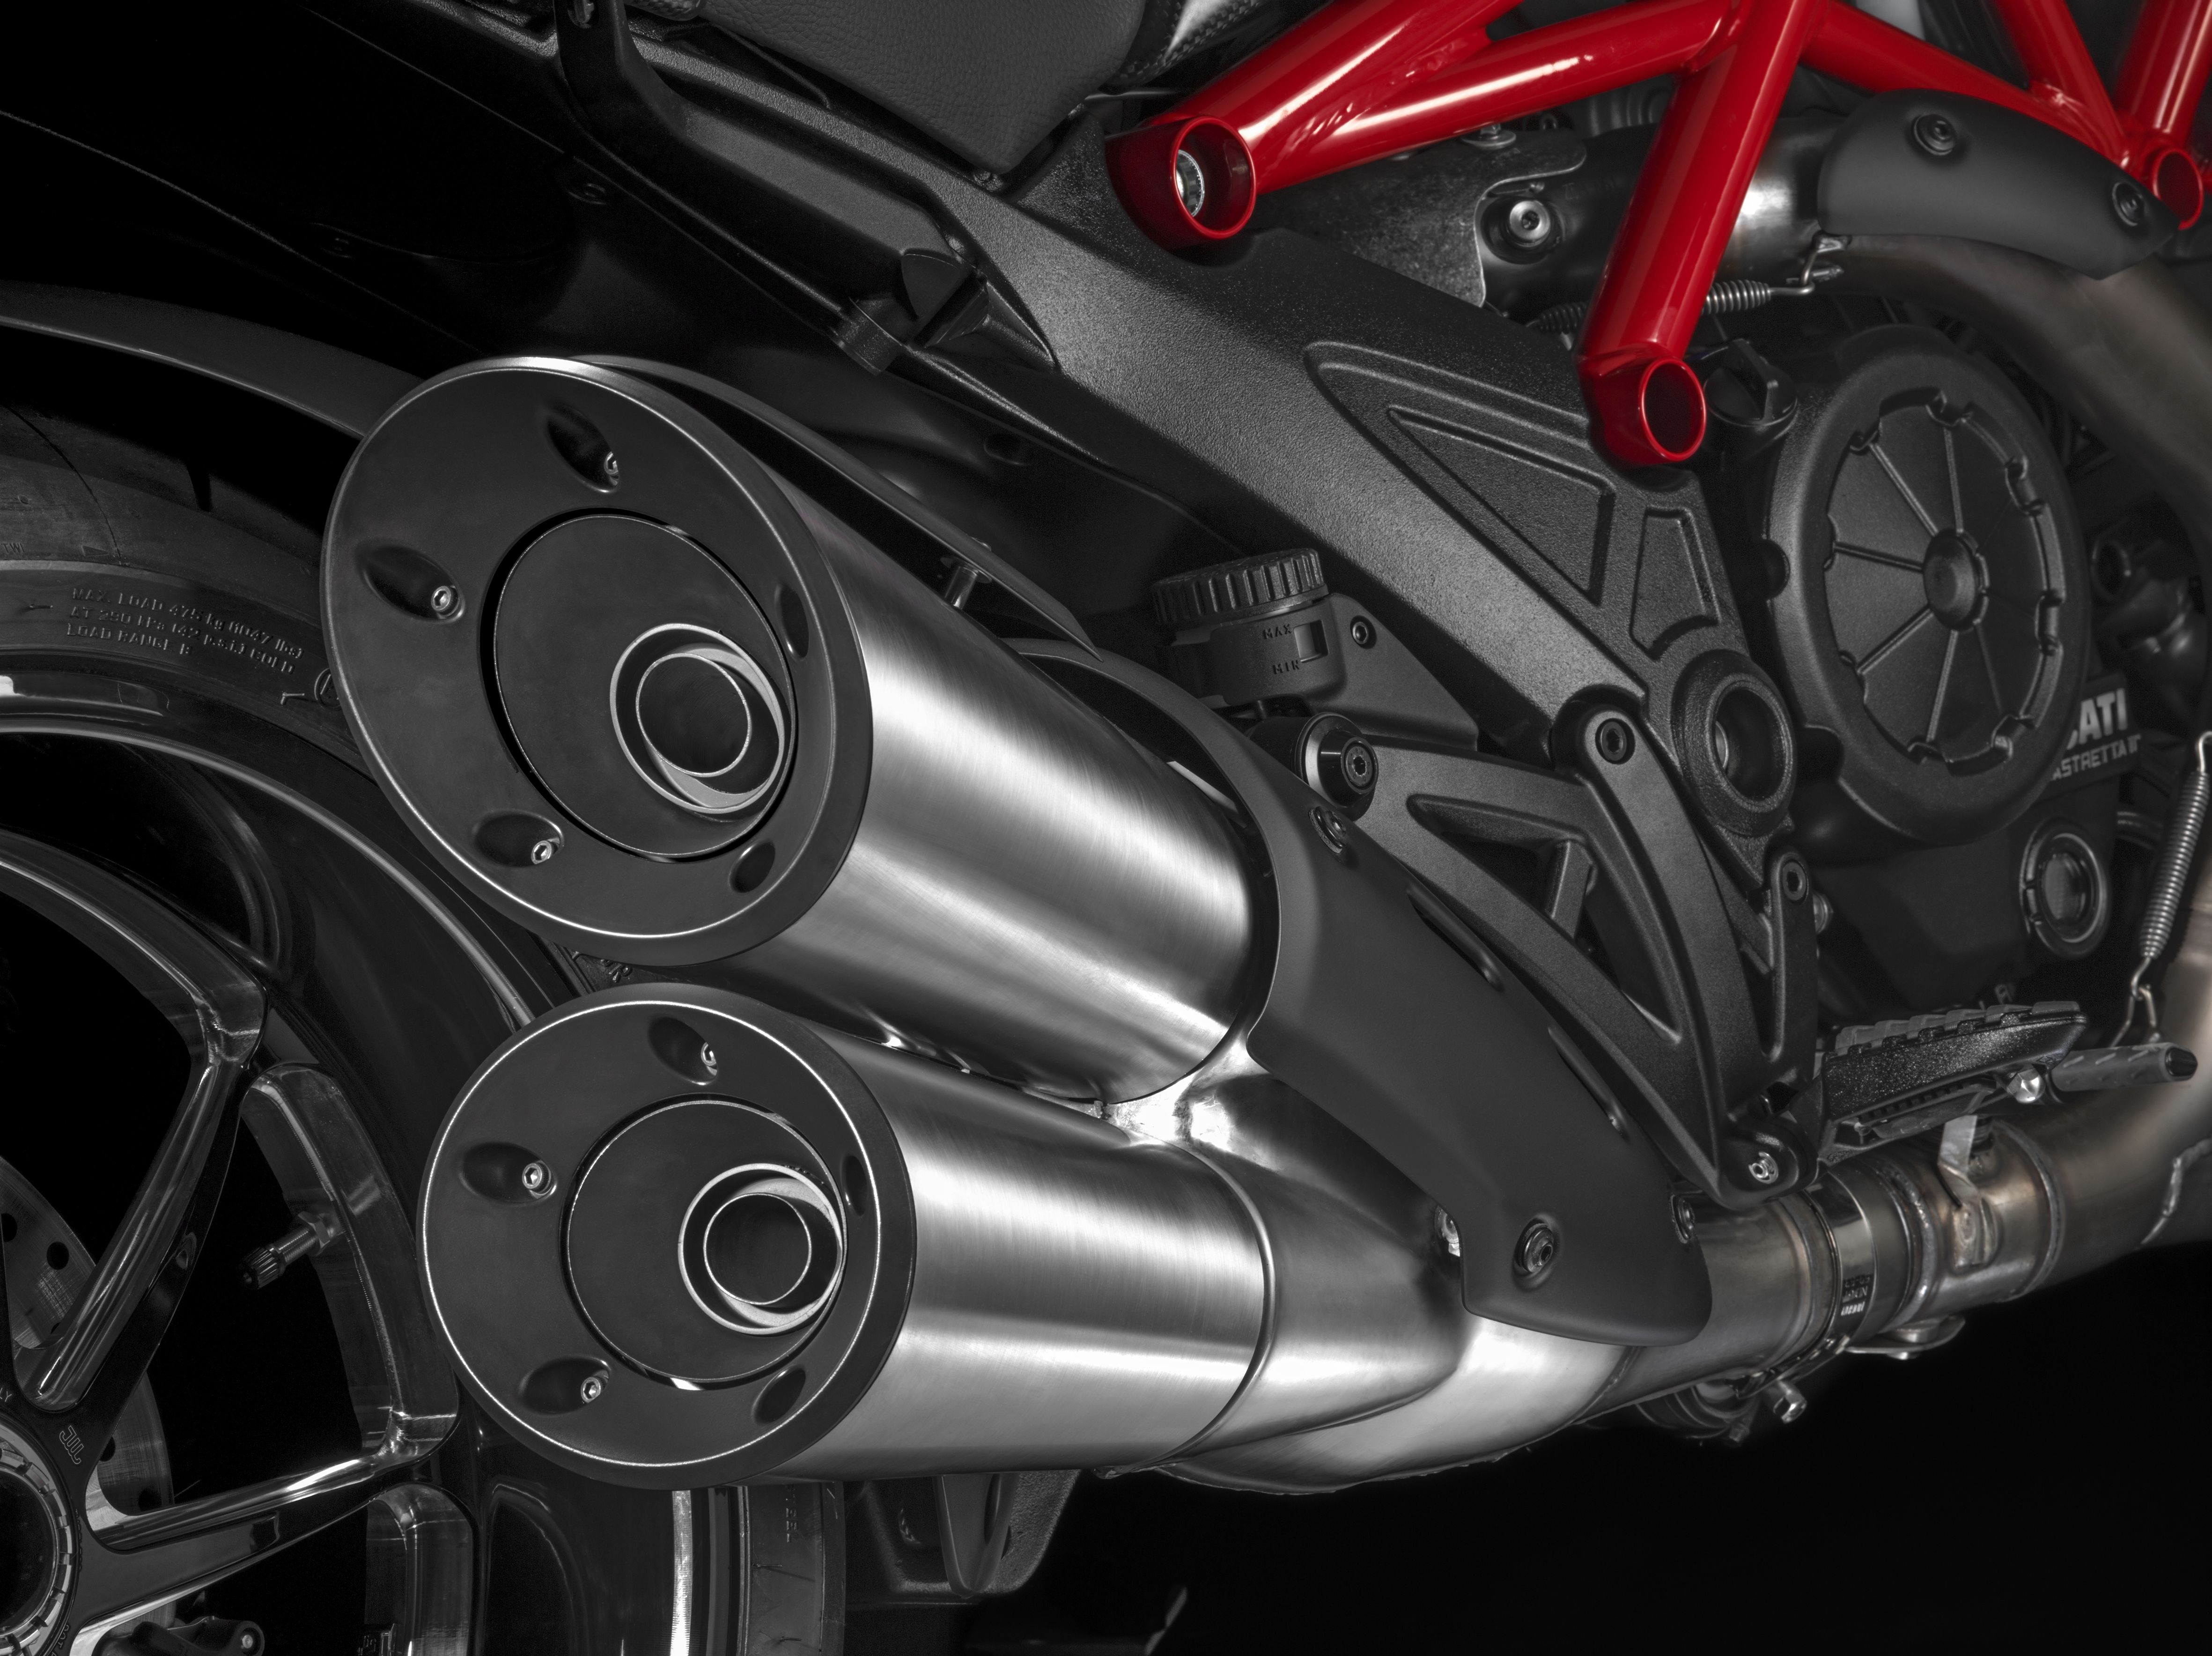 Ducati Diavel 2014 review